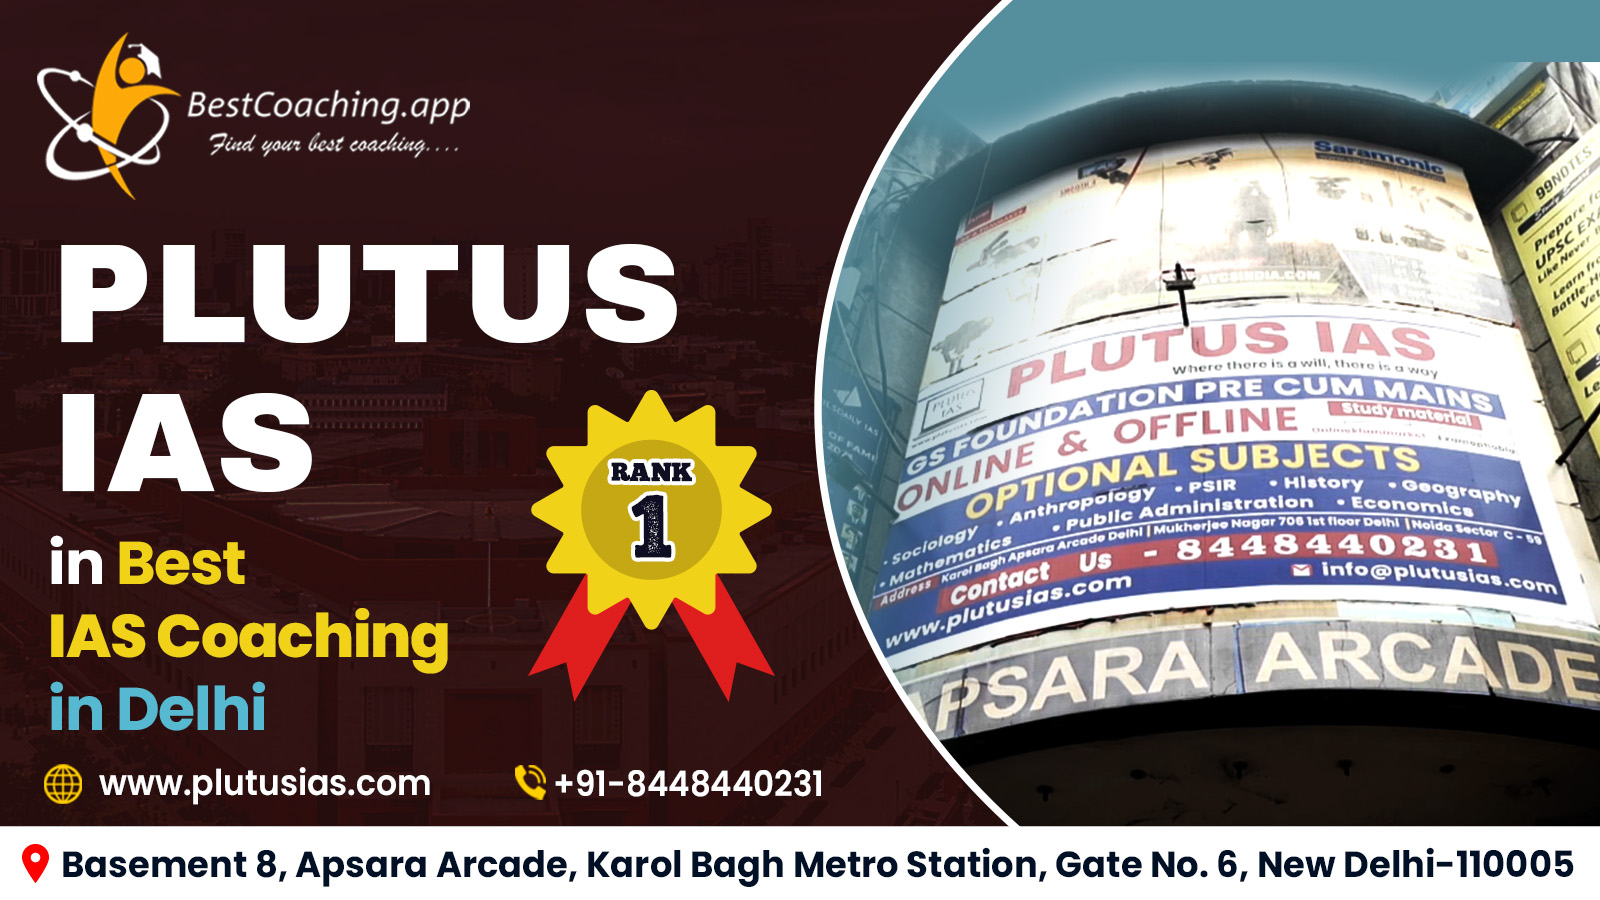 Plutus IAS | Rank 1 in Best IAS Coaching in Delhi